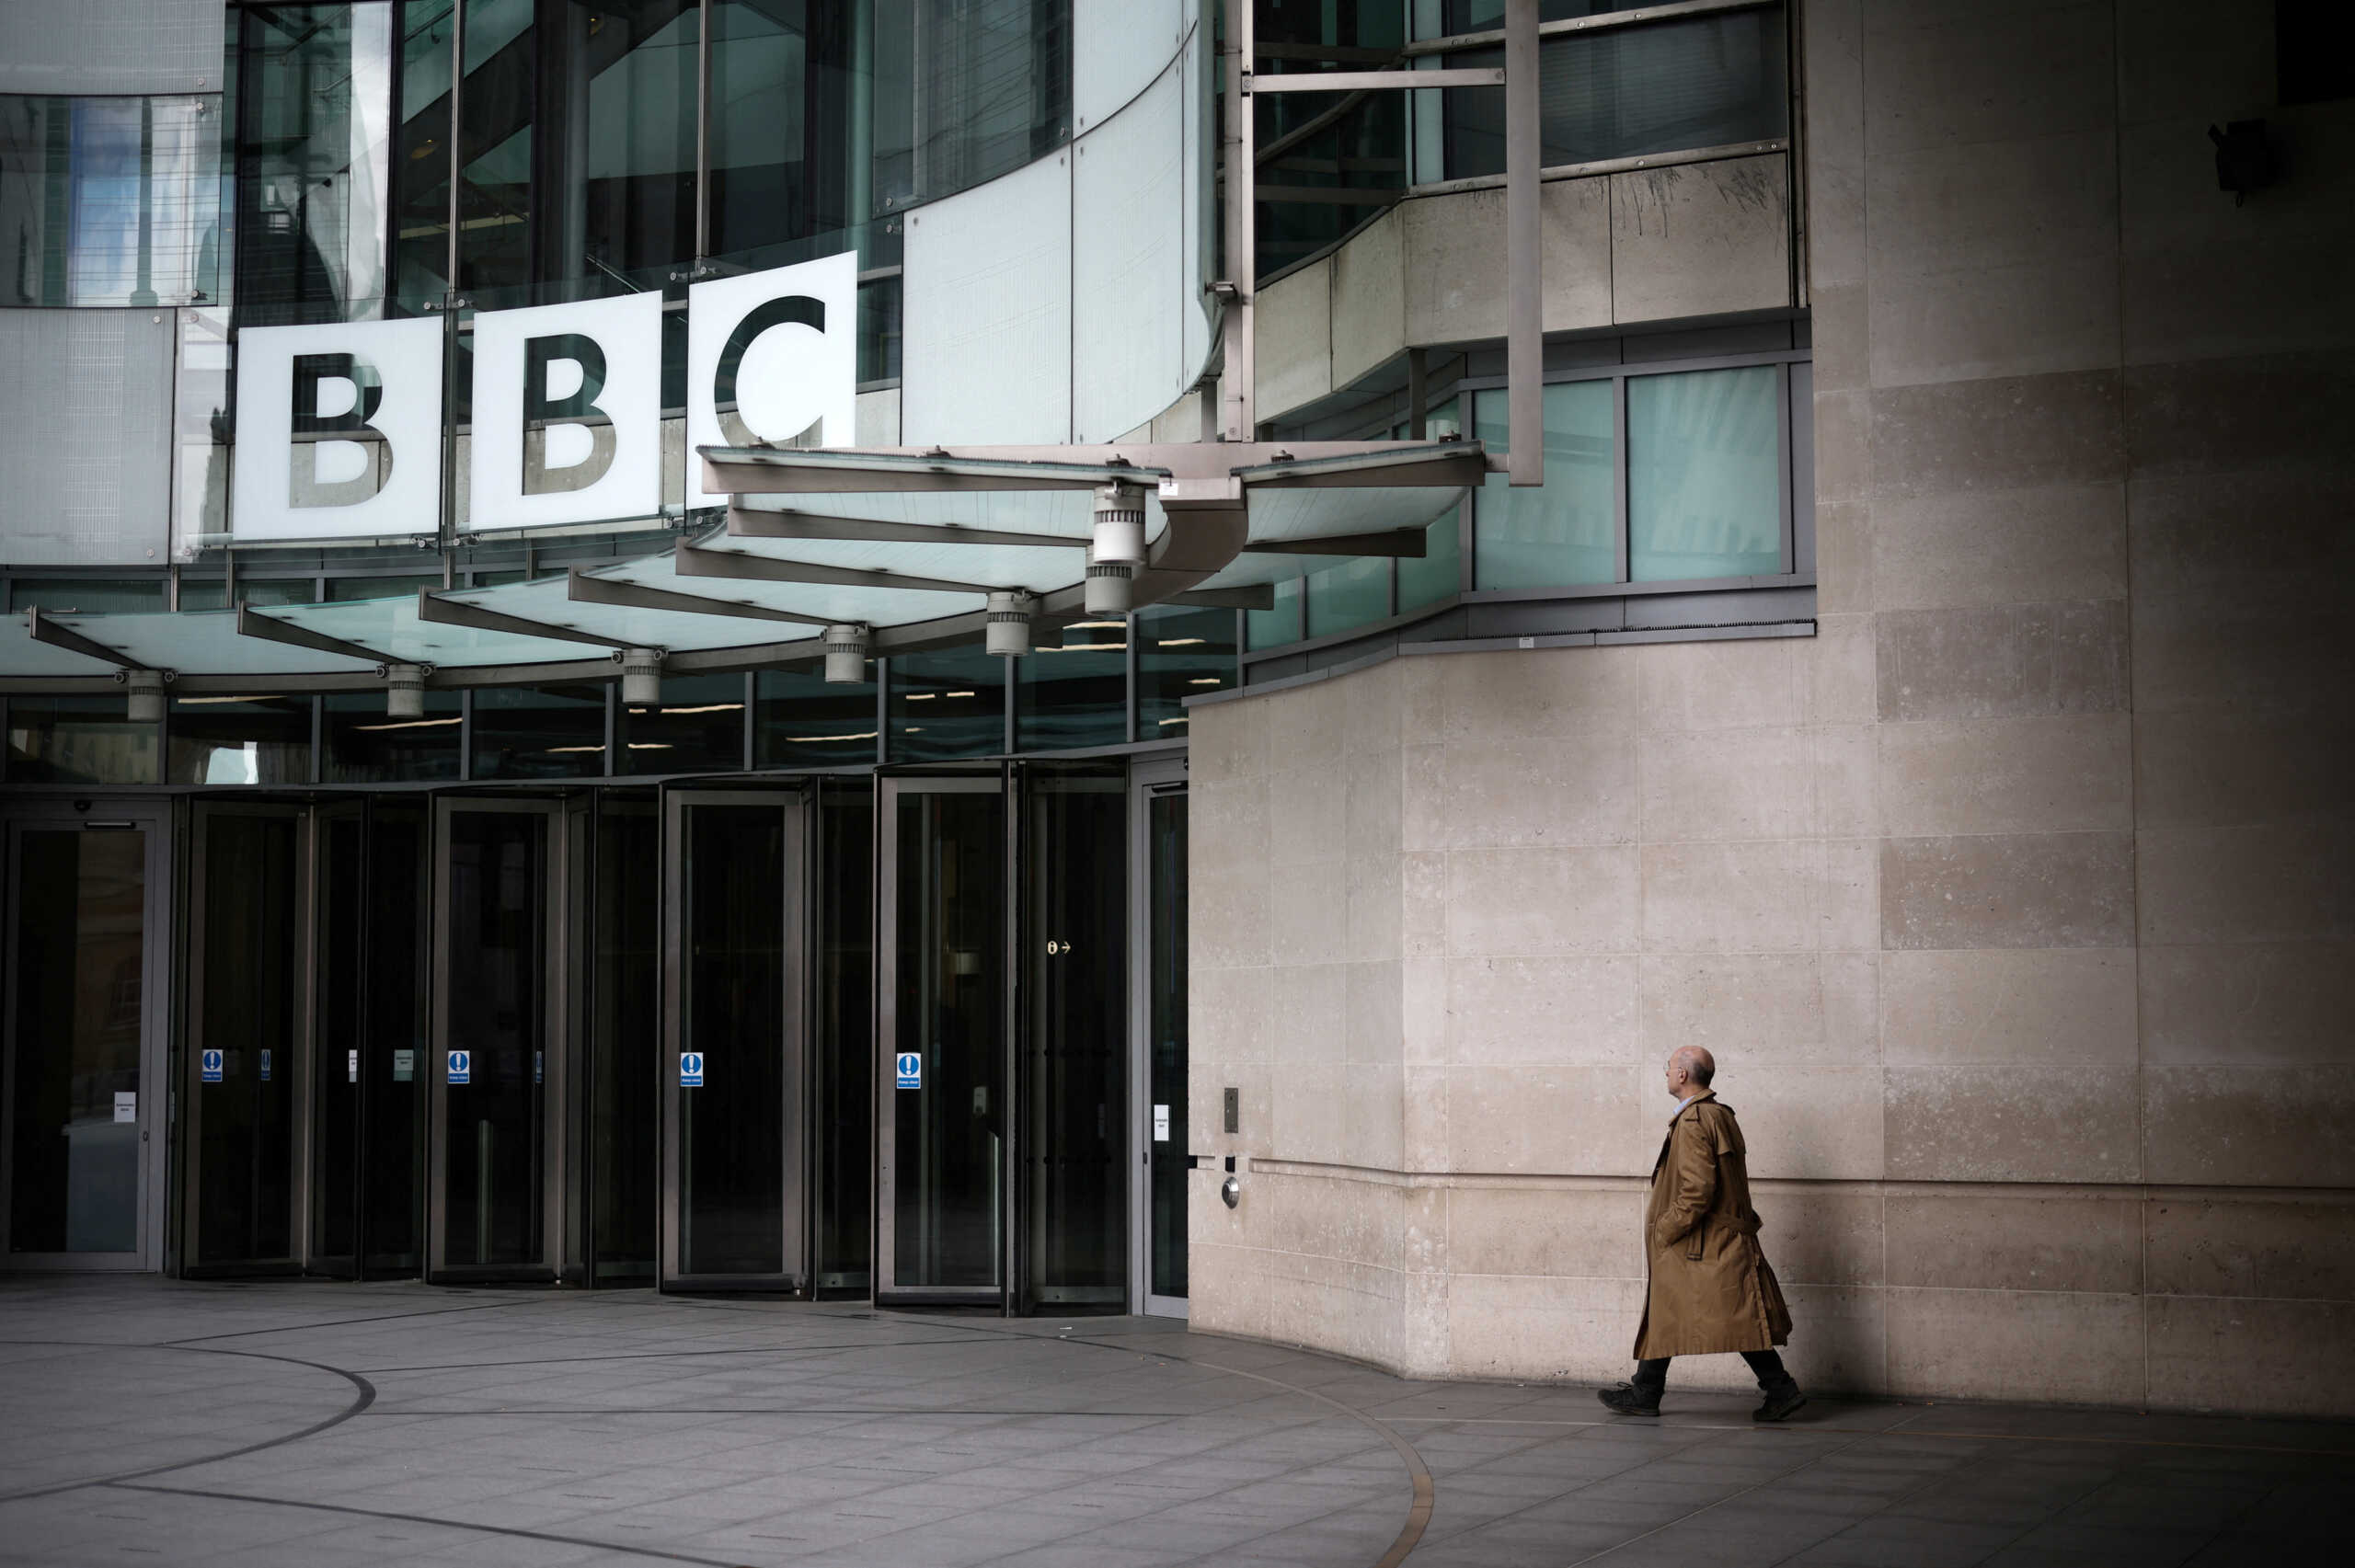 BBC: Κοινό μυστικό το όνομα του παρουσιαστή, αλλά το δίκτυο δεν το αποκαλύπτει